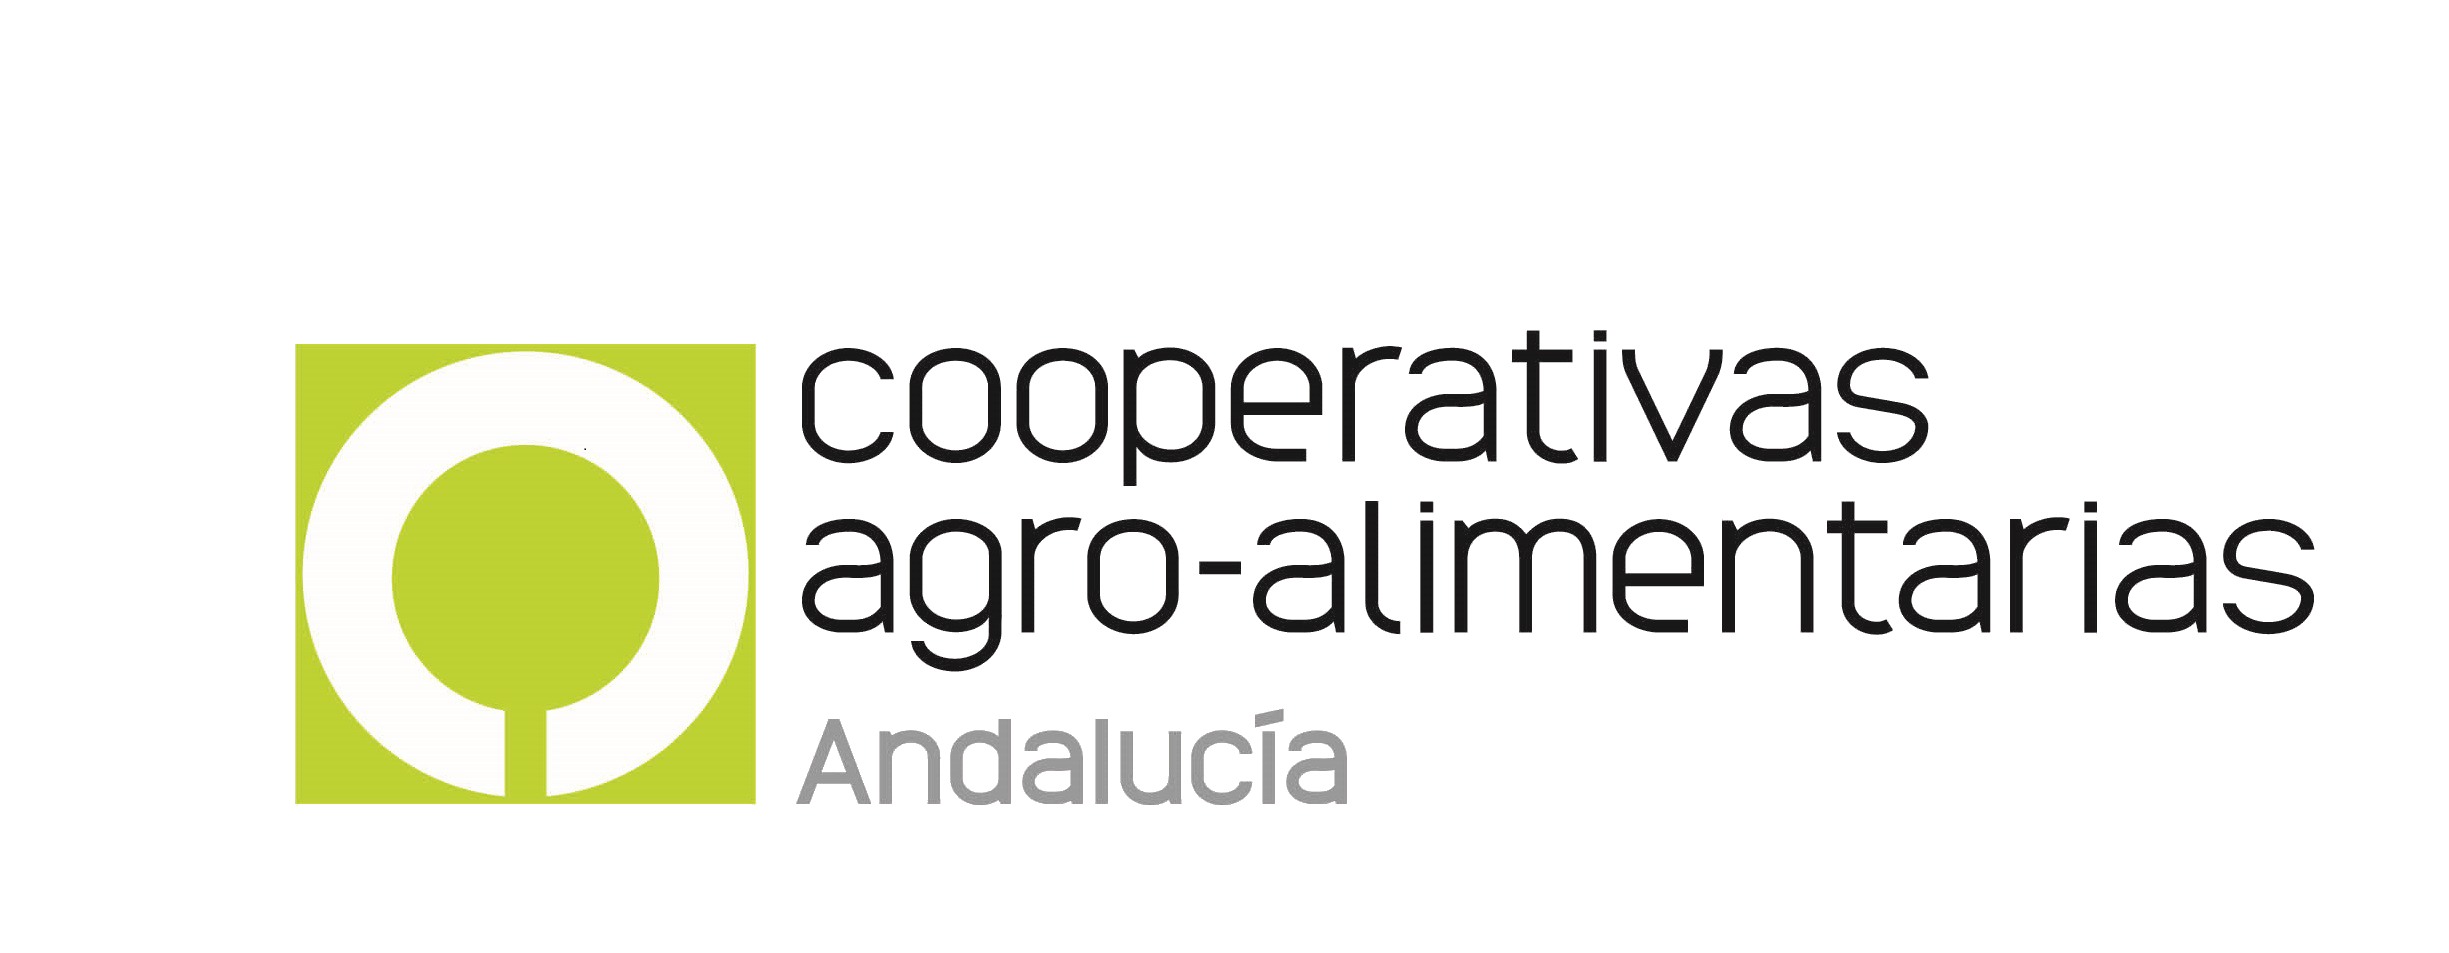 Cooperativas Agro-alimentarias de Andalucía